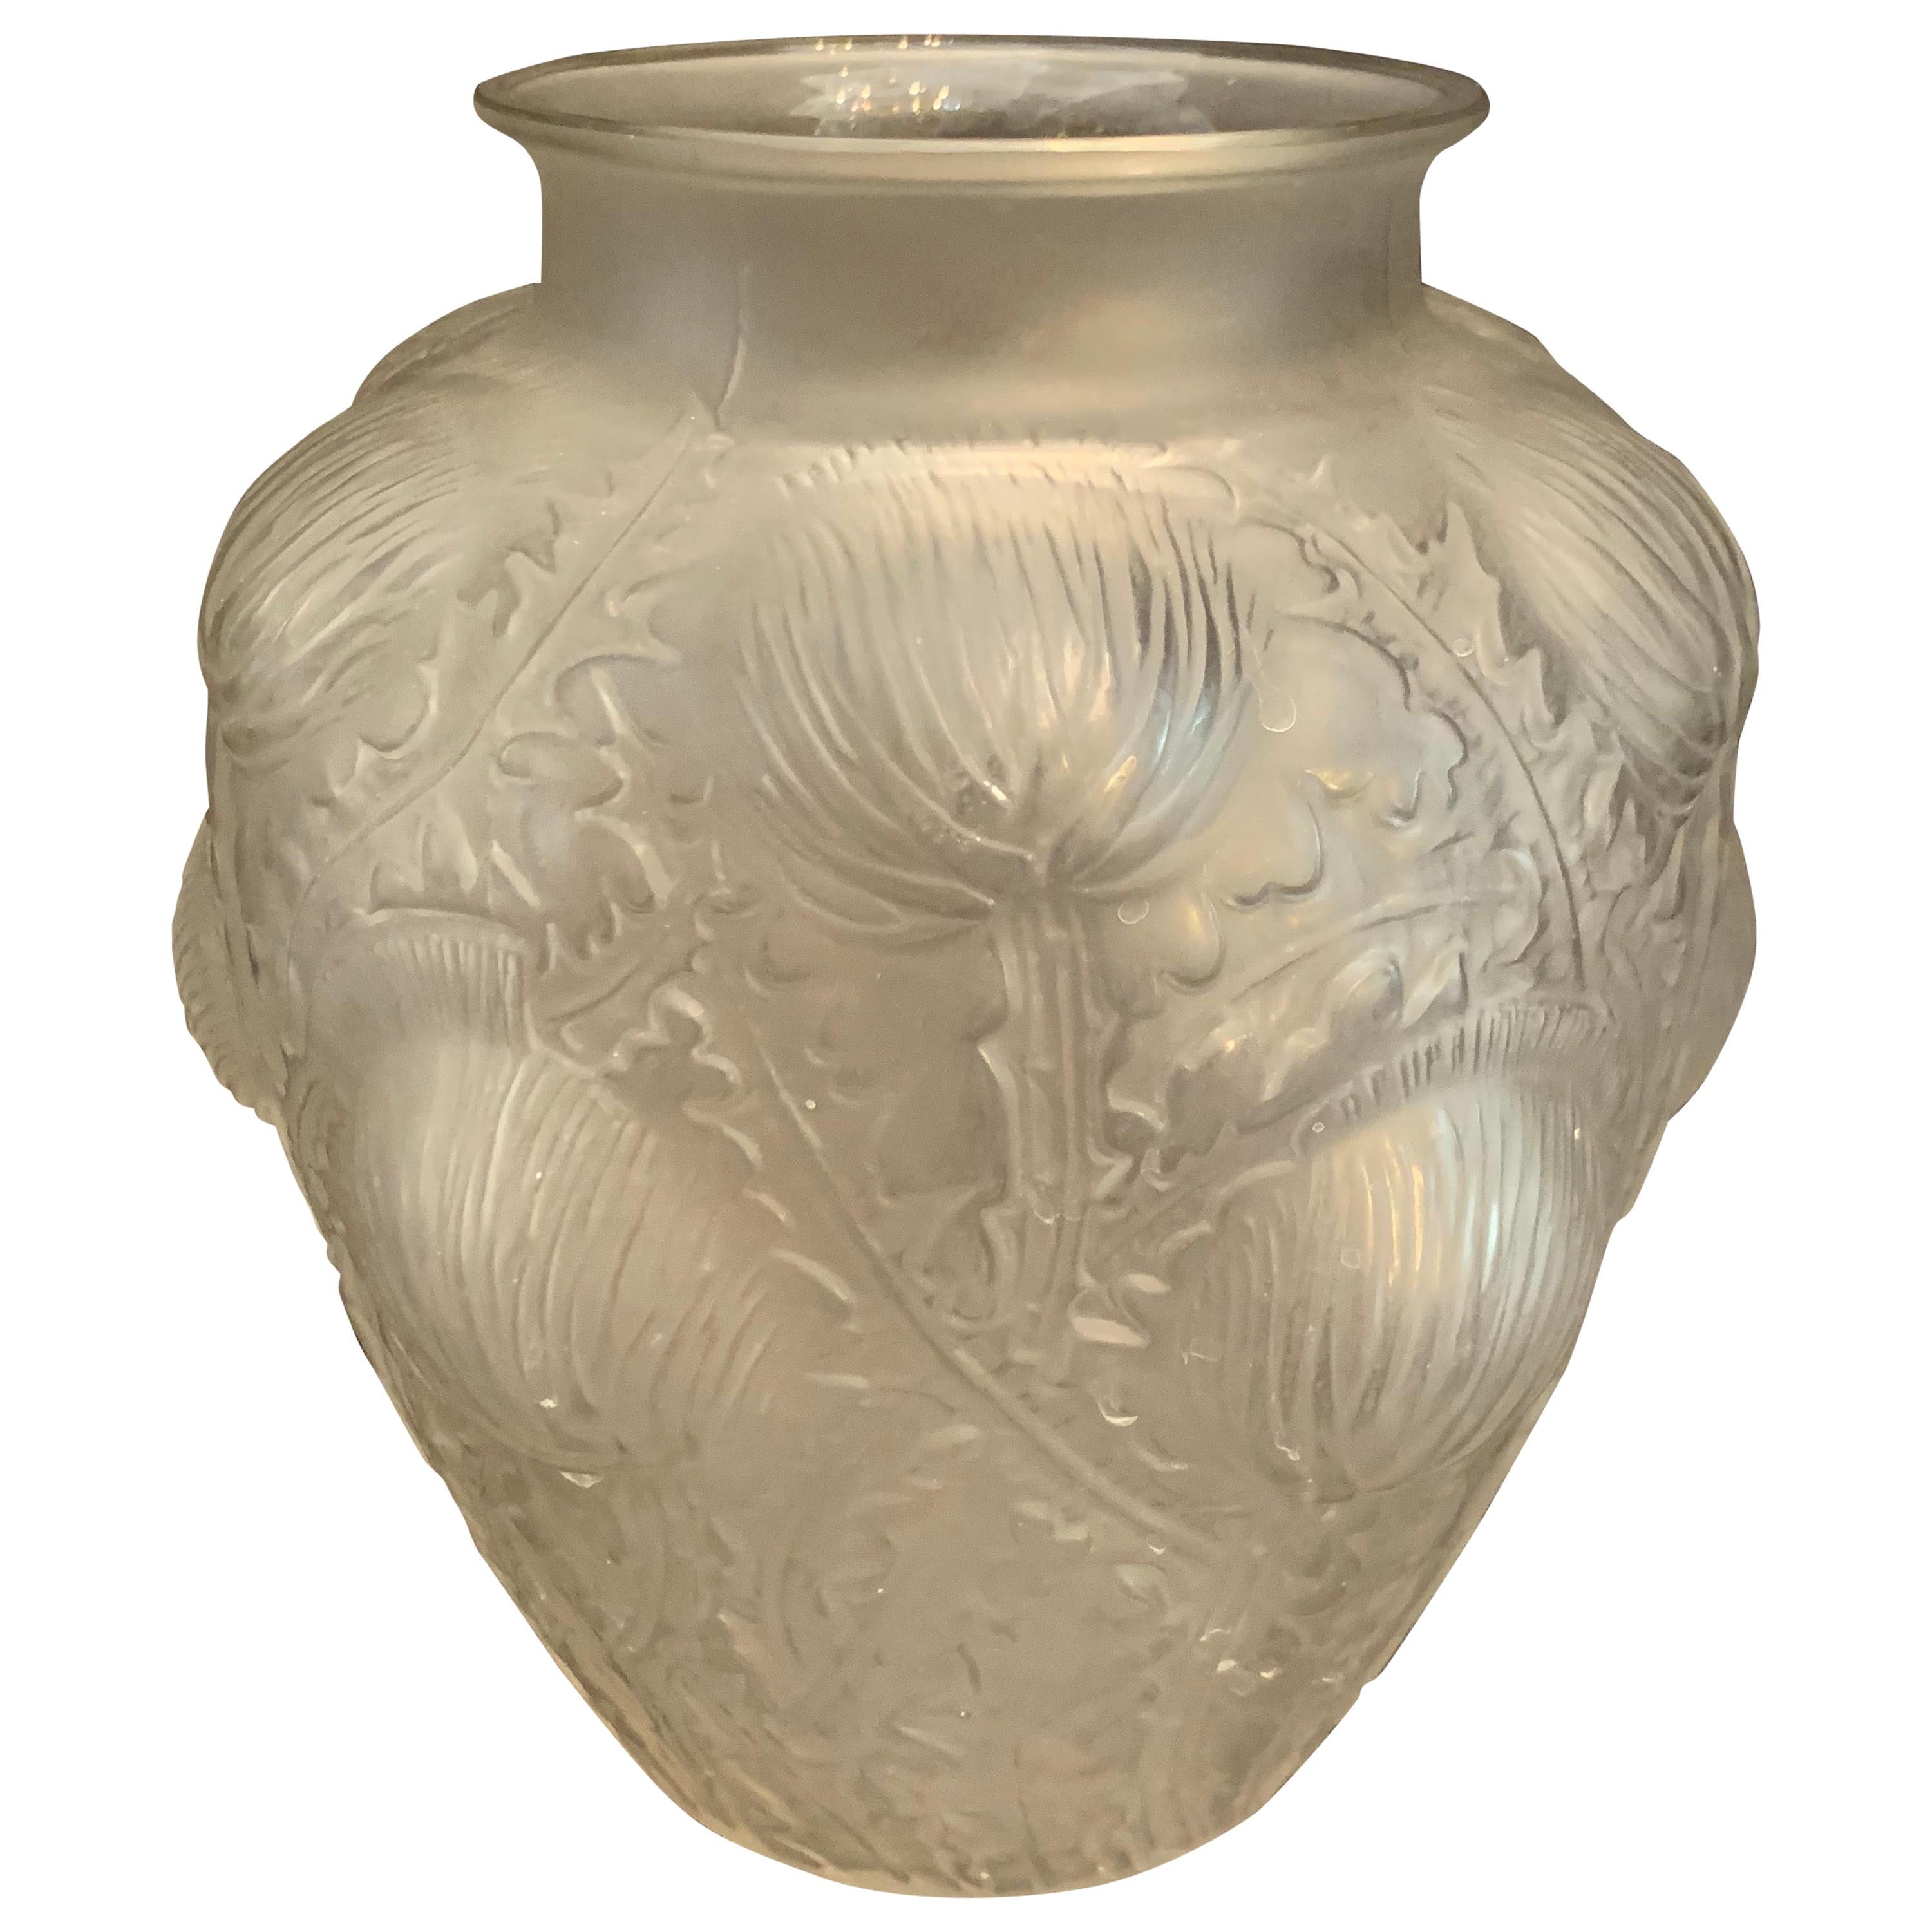 Wonderful Signed René Lalique Domremy Art Glass Flower Vase Marcilhac No. 979